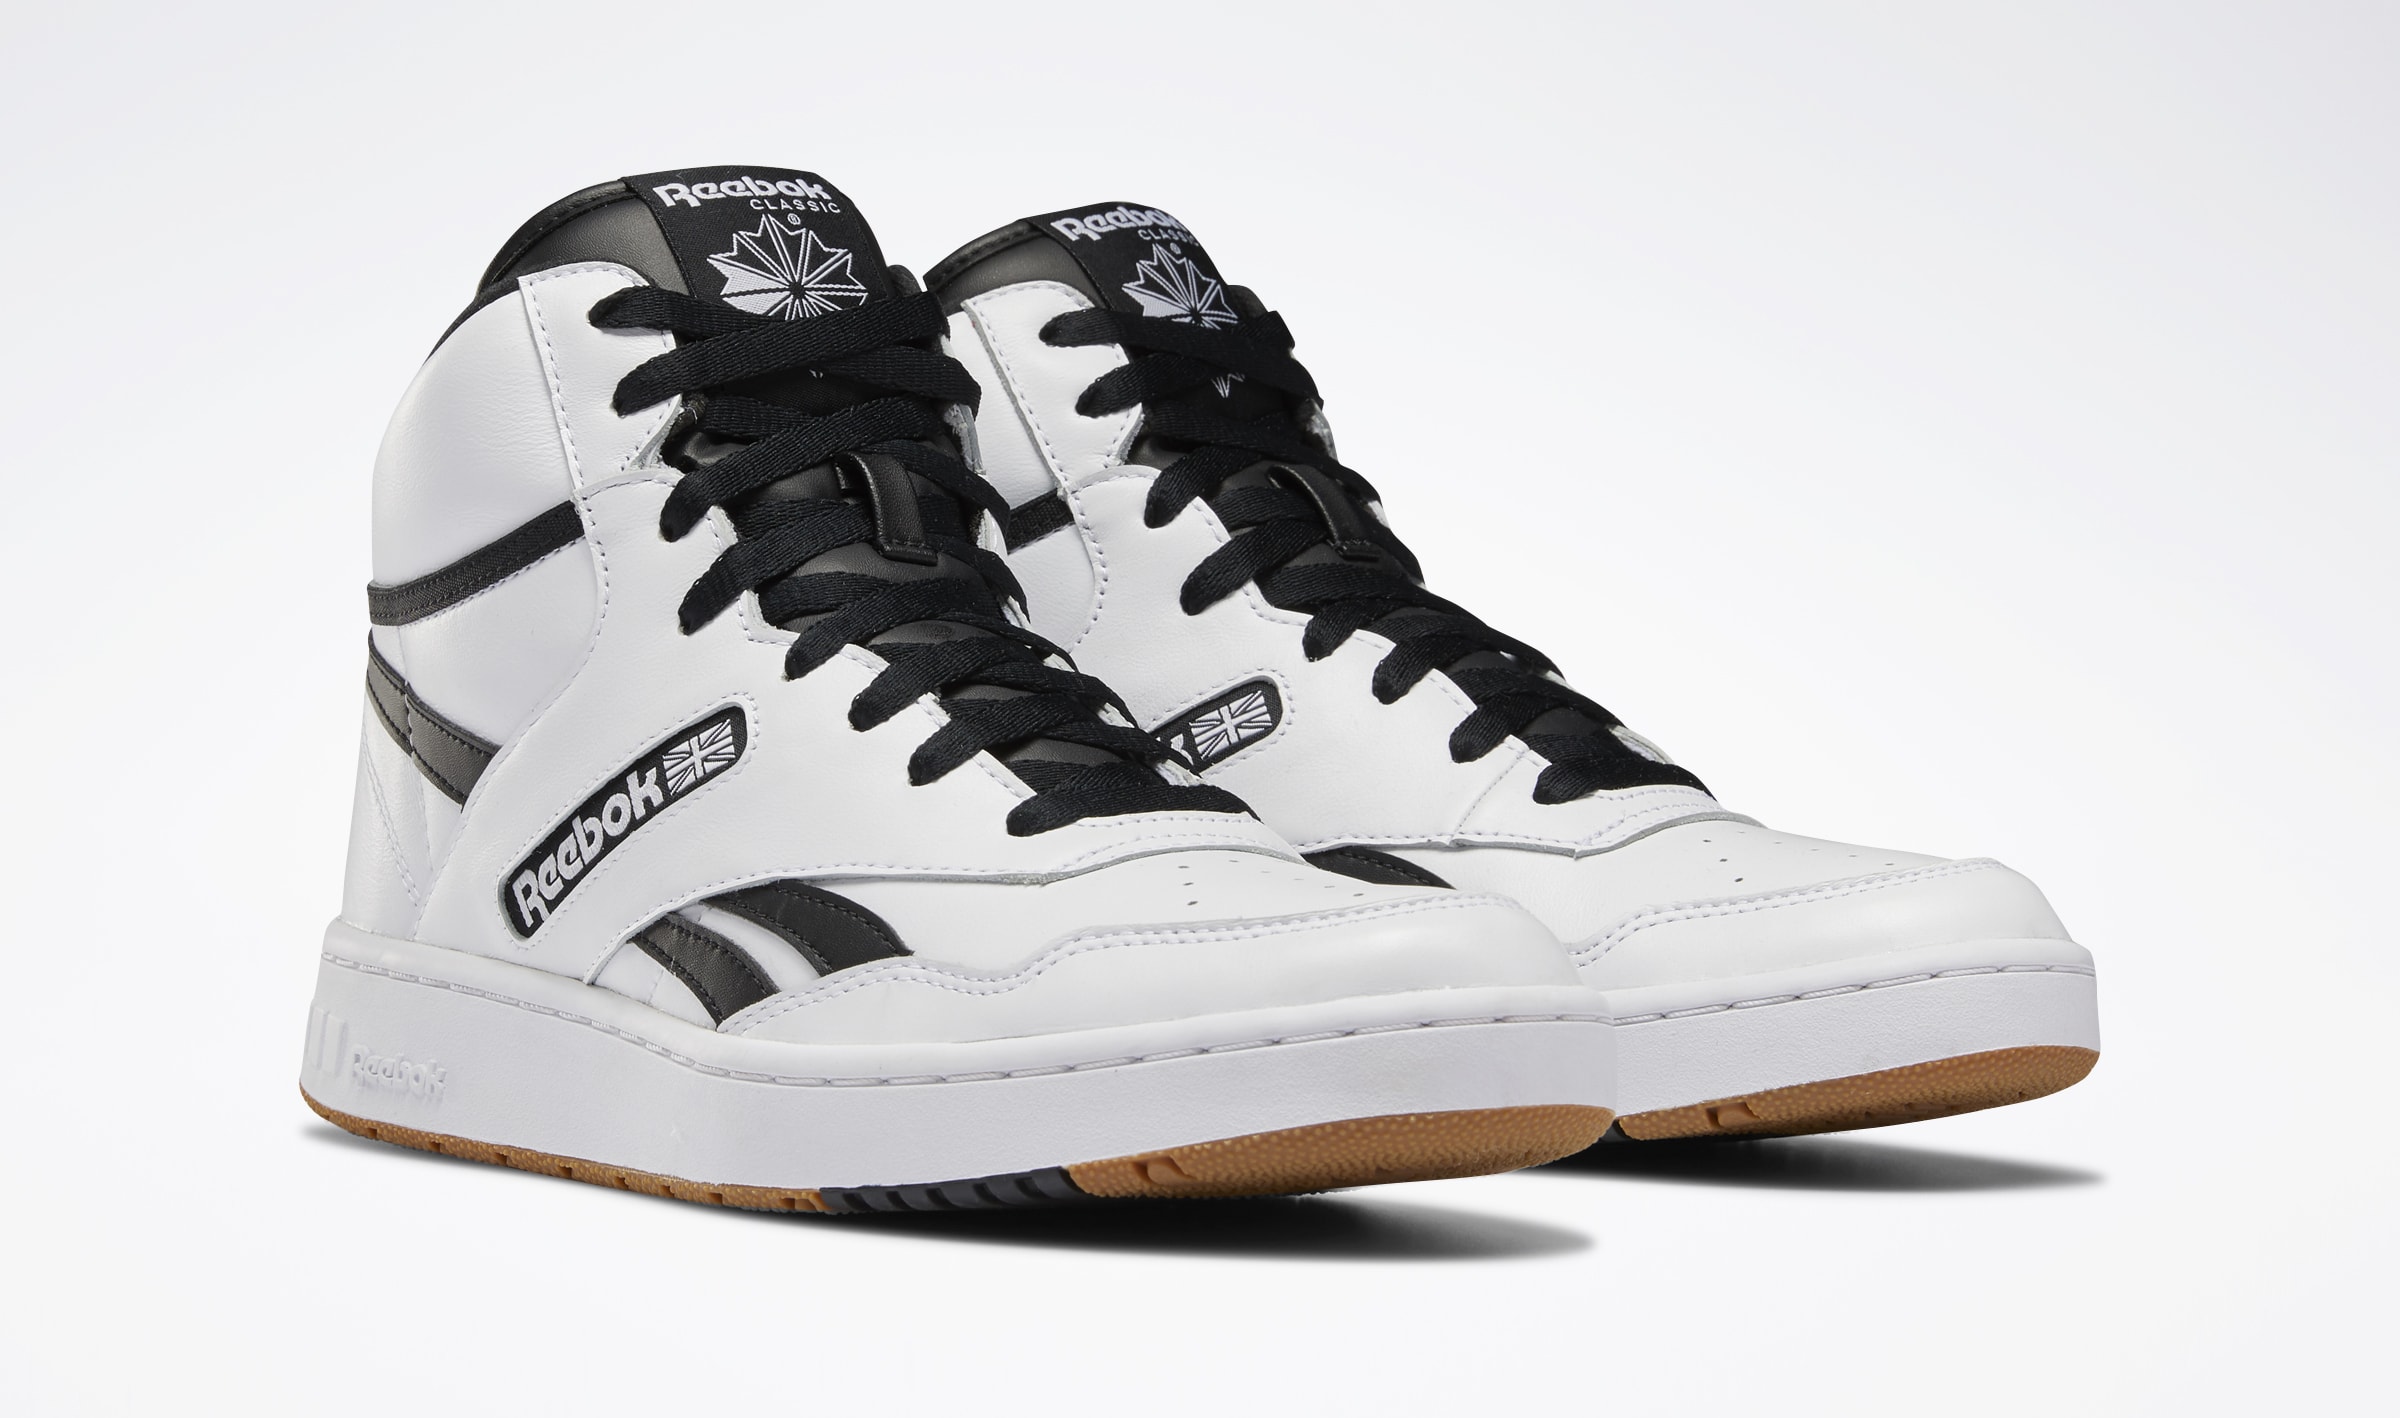 PROMO: Retro Basketball Sneakers Are Making A Comeback | Complex